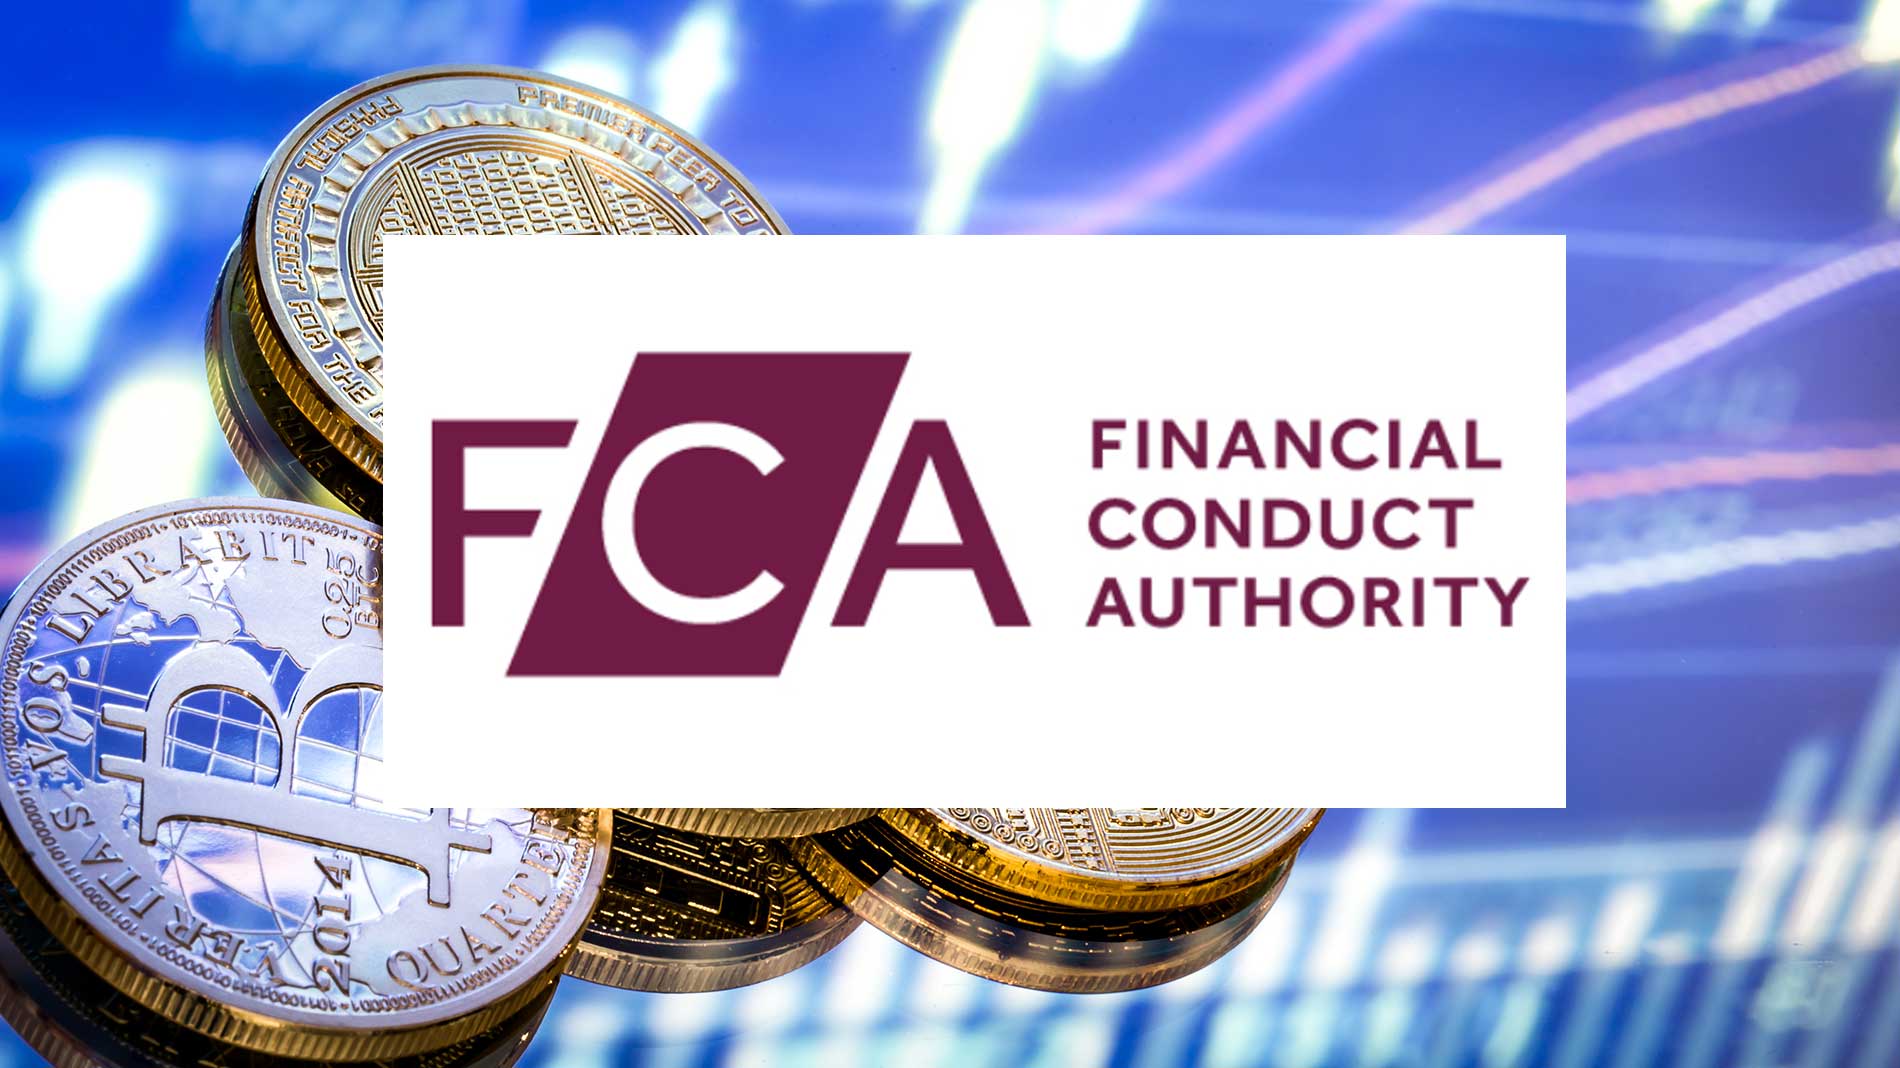 “Investidores em criptomoedas devem se preparar para perder tudo”, diz FCA